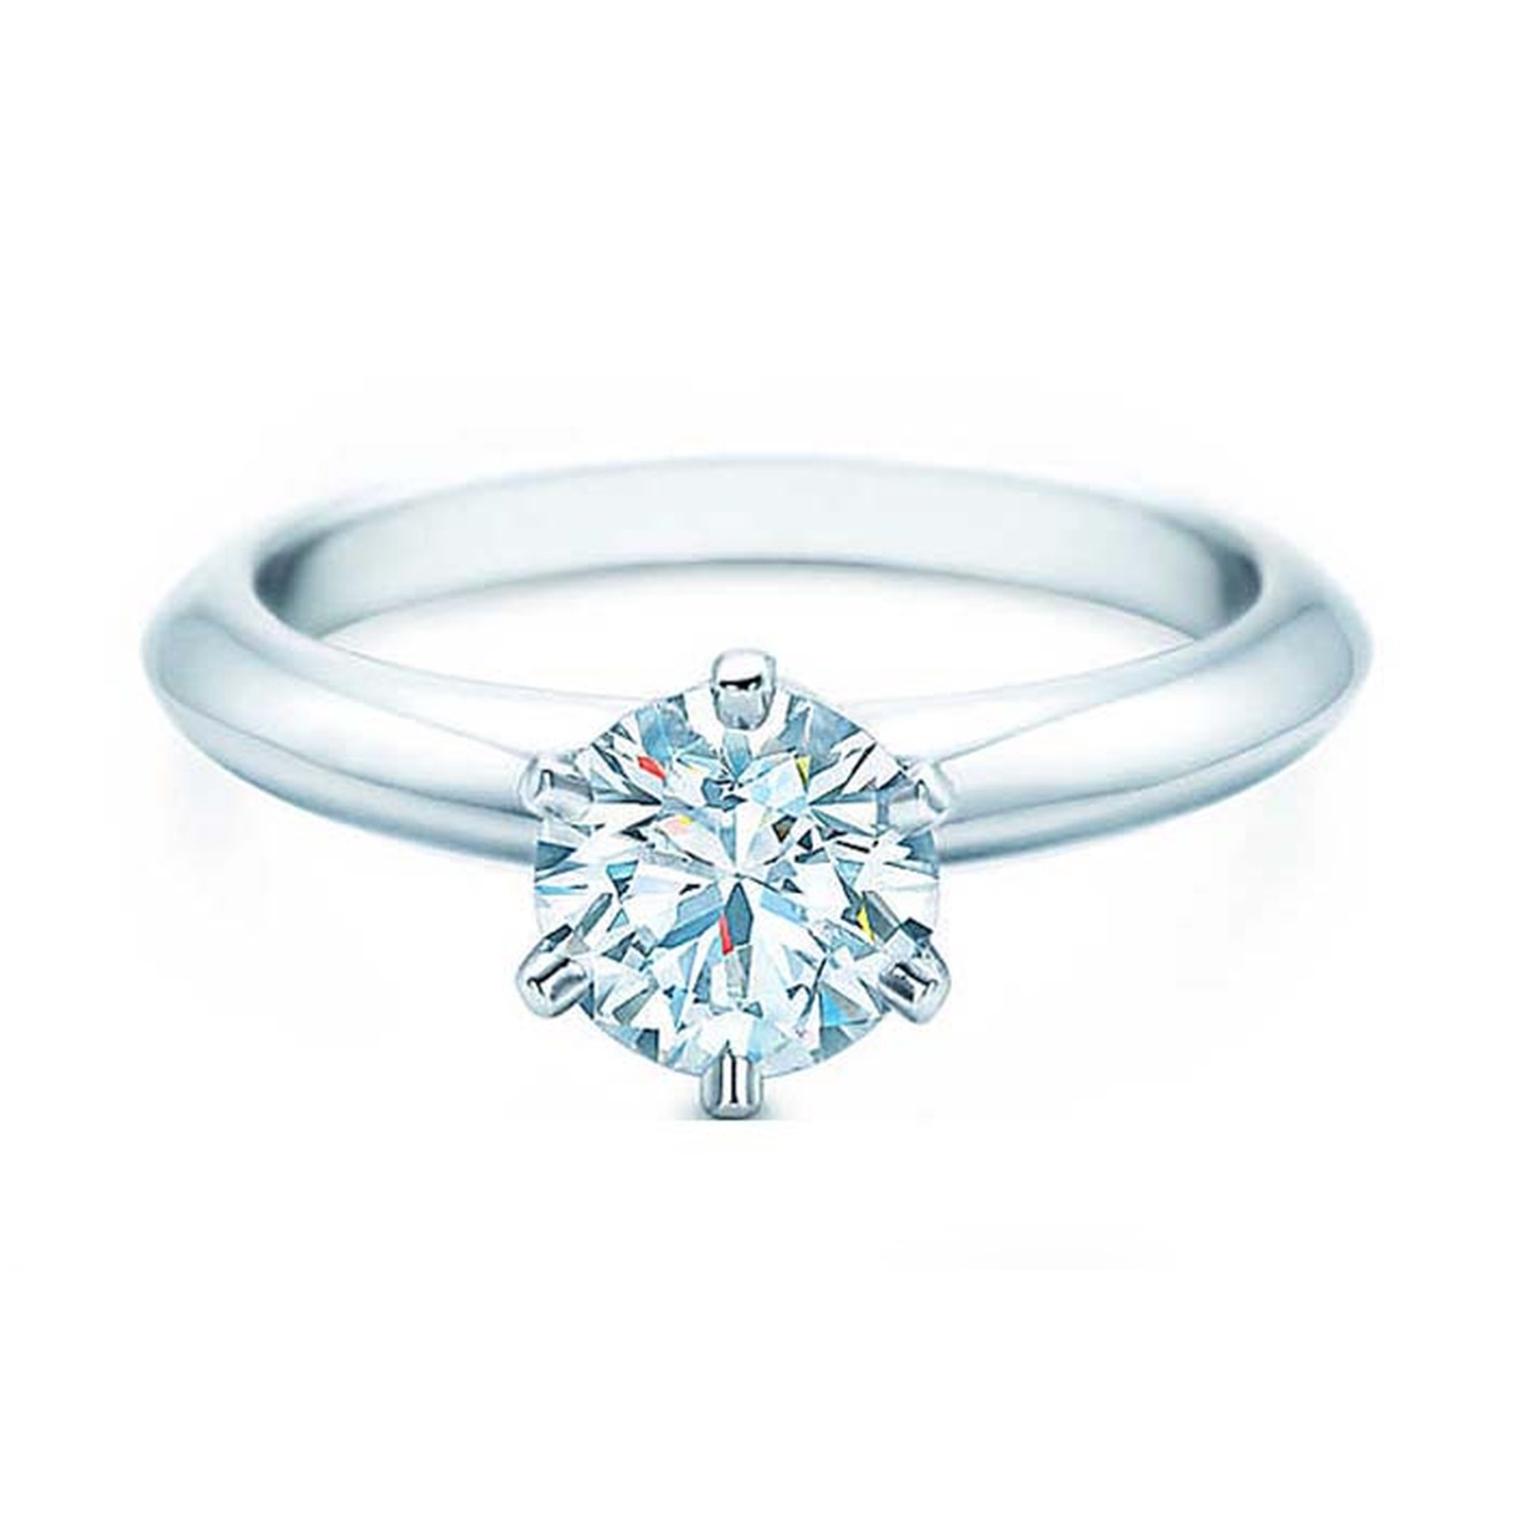 1 carat diamond Tiffany setting 